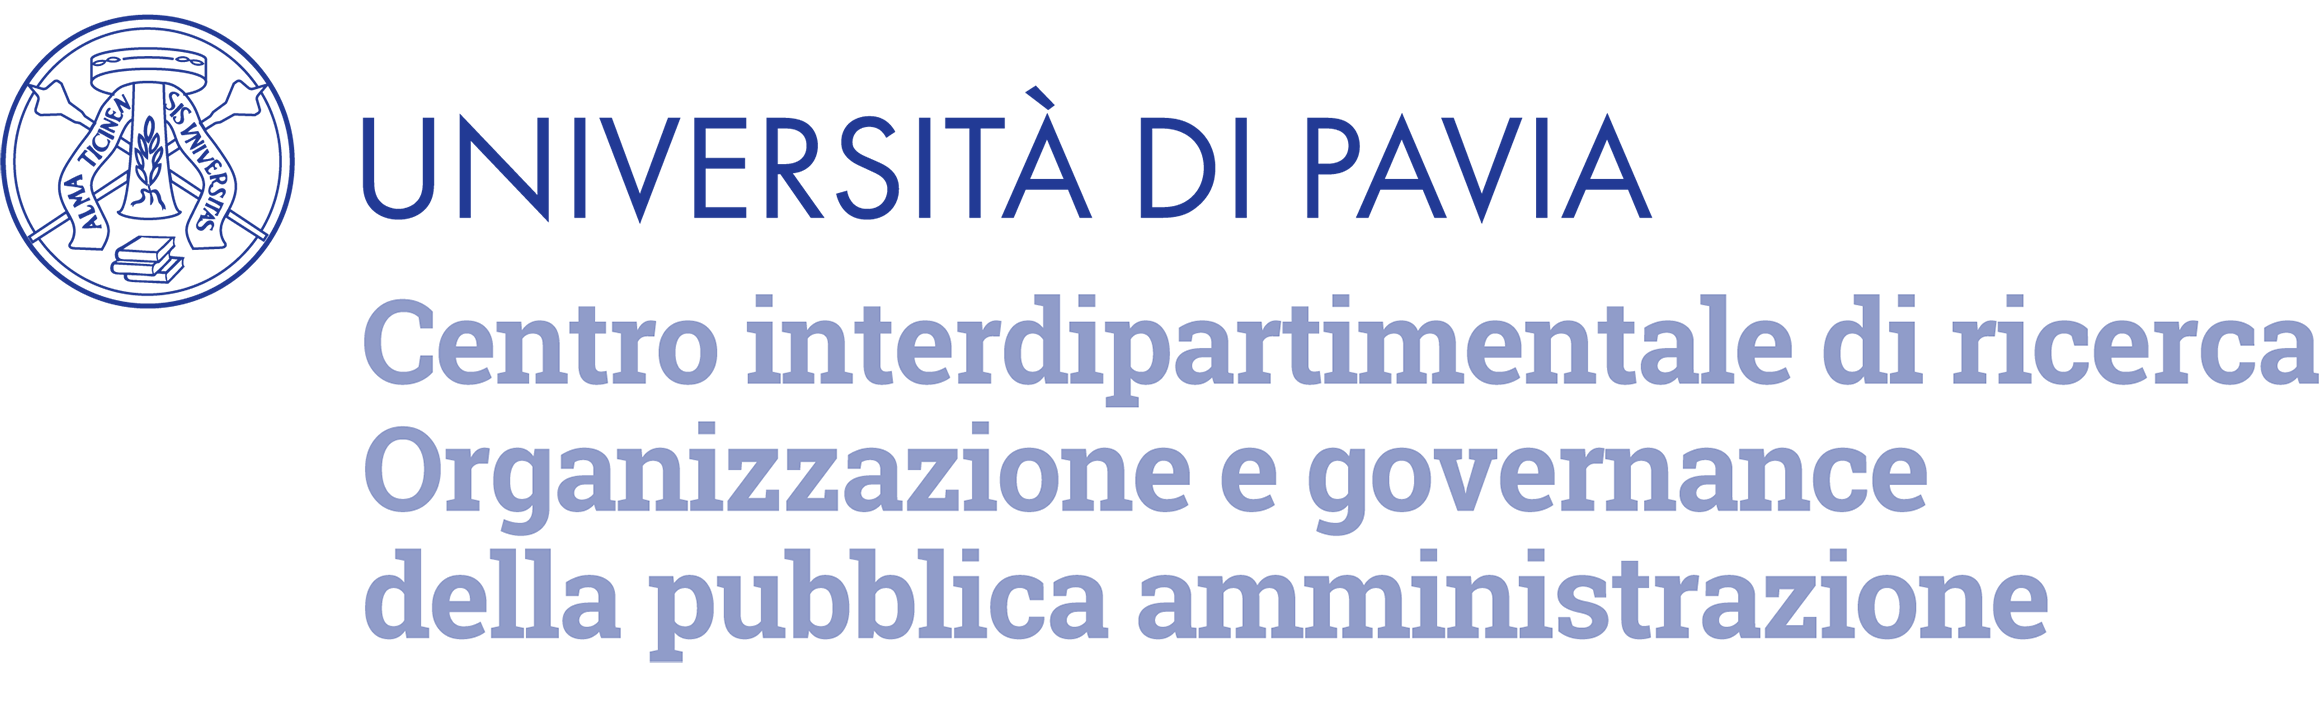 Università degli Studi di Pavia - Centro interdipartimentale di ricerca. Organizzazione e governance della pubblica amministrazione